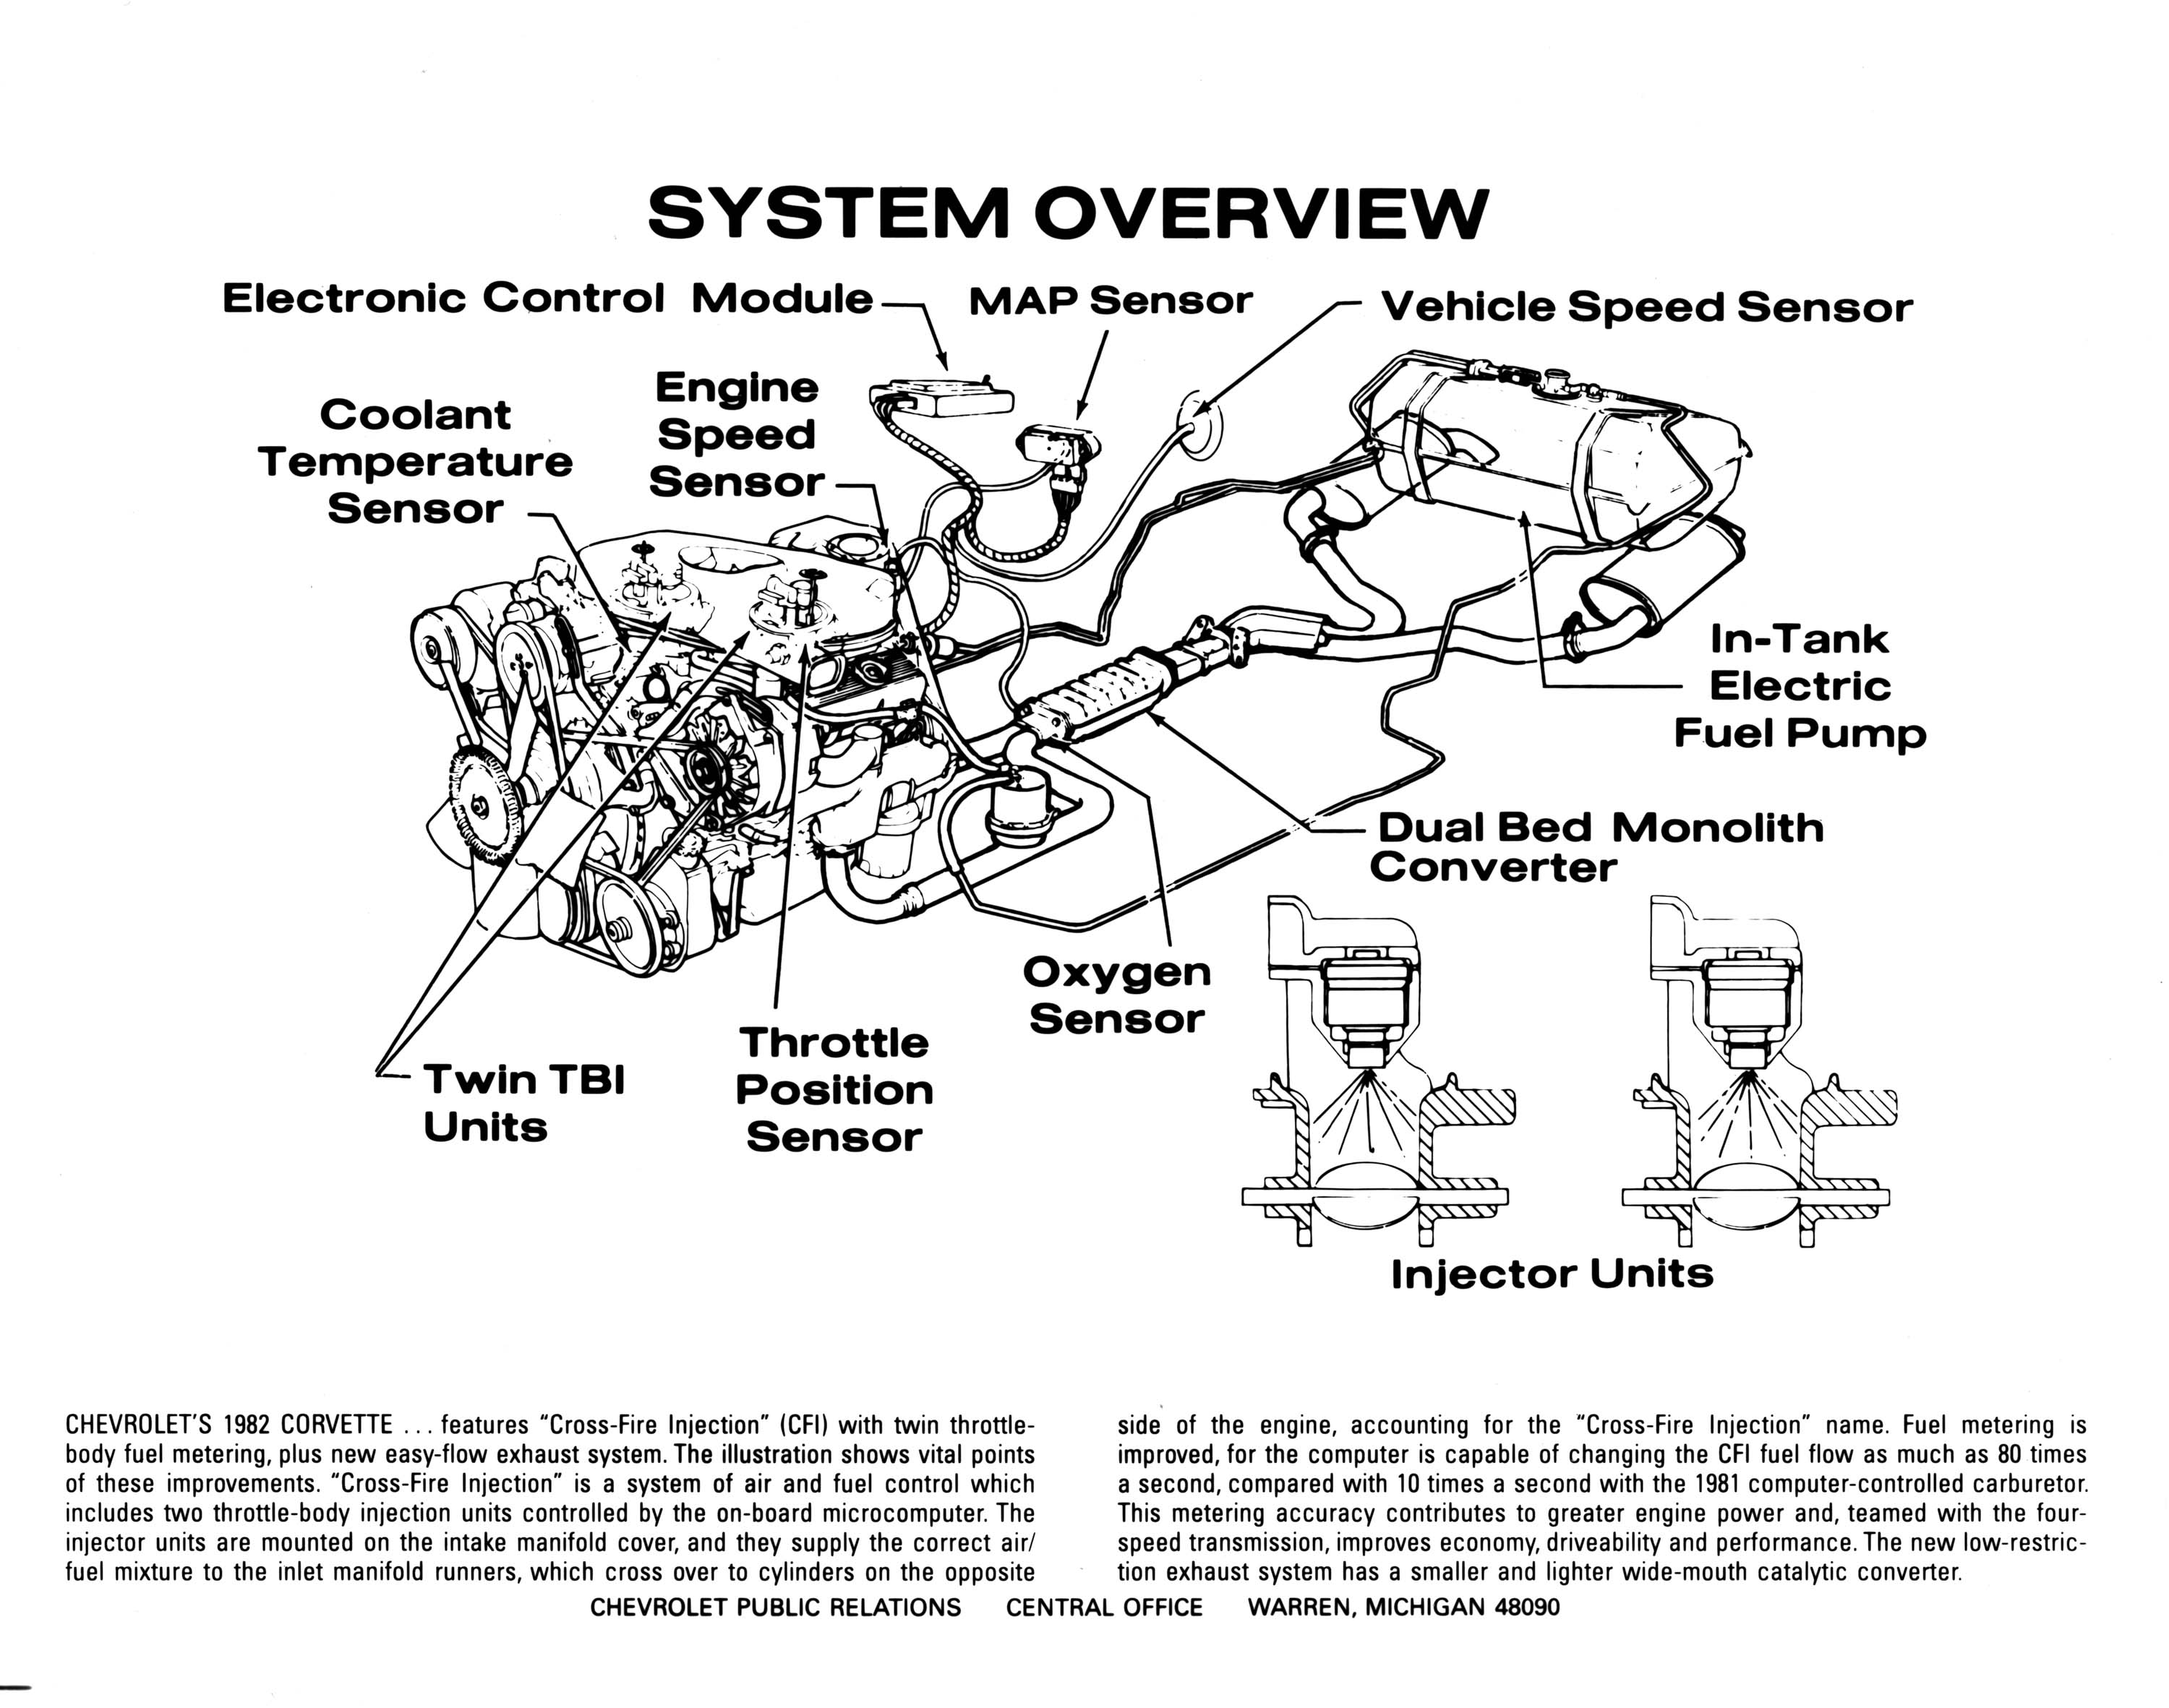 1982_Chevrolet_Corvette_Press_Kit-14